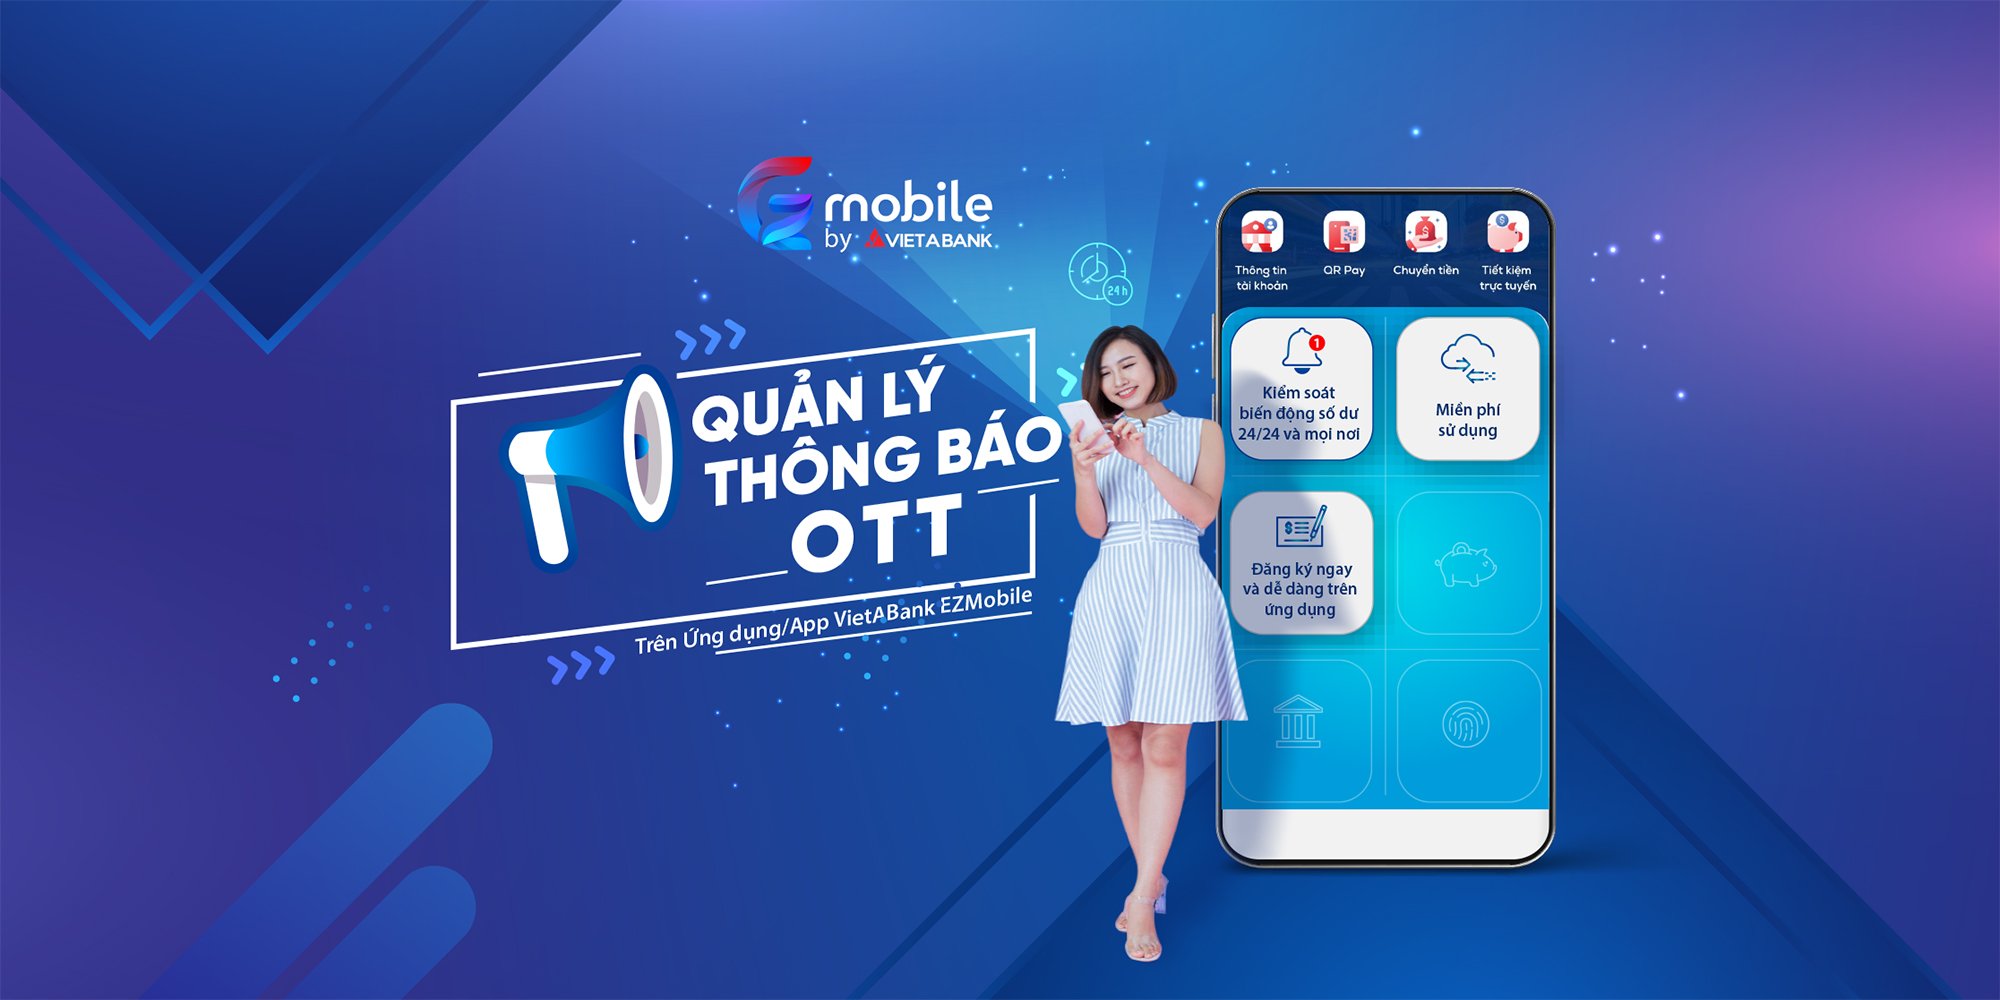 Quản lý thông báo OTT trên app VietABank EZMobile